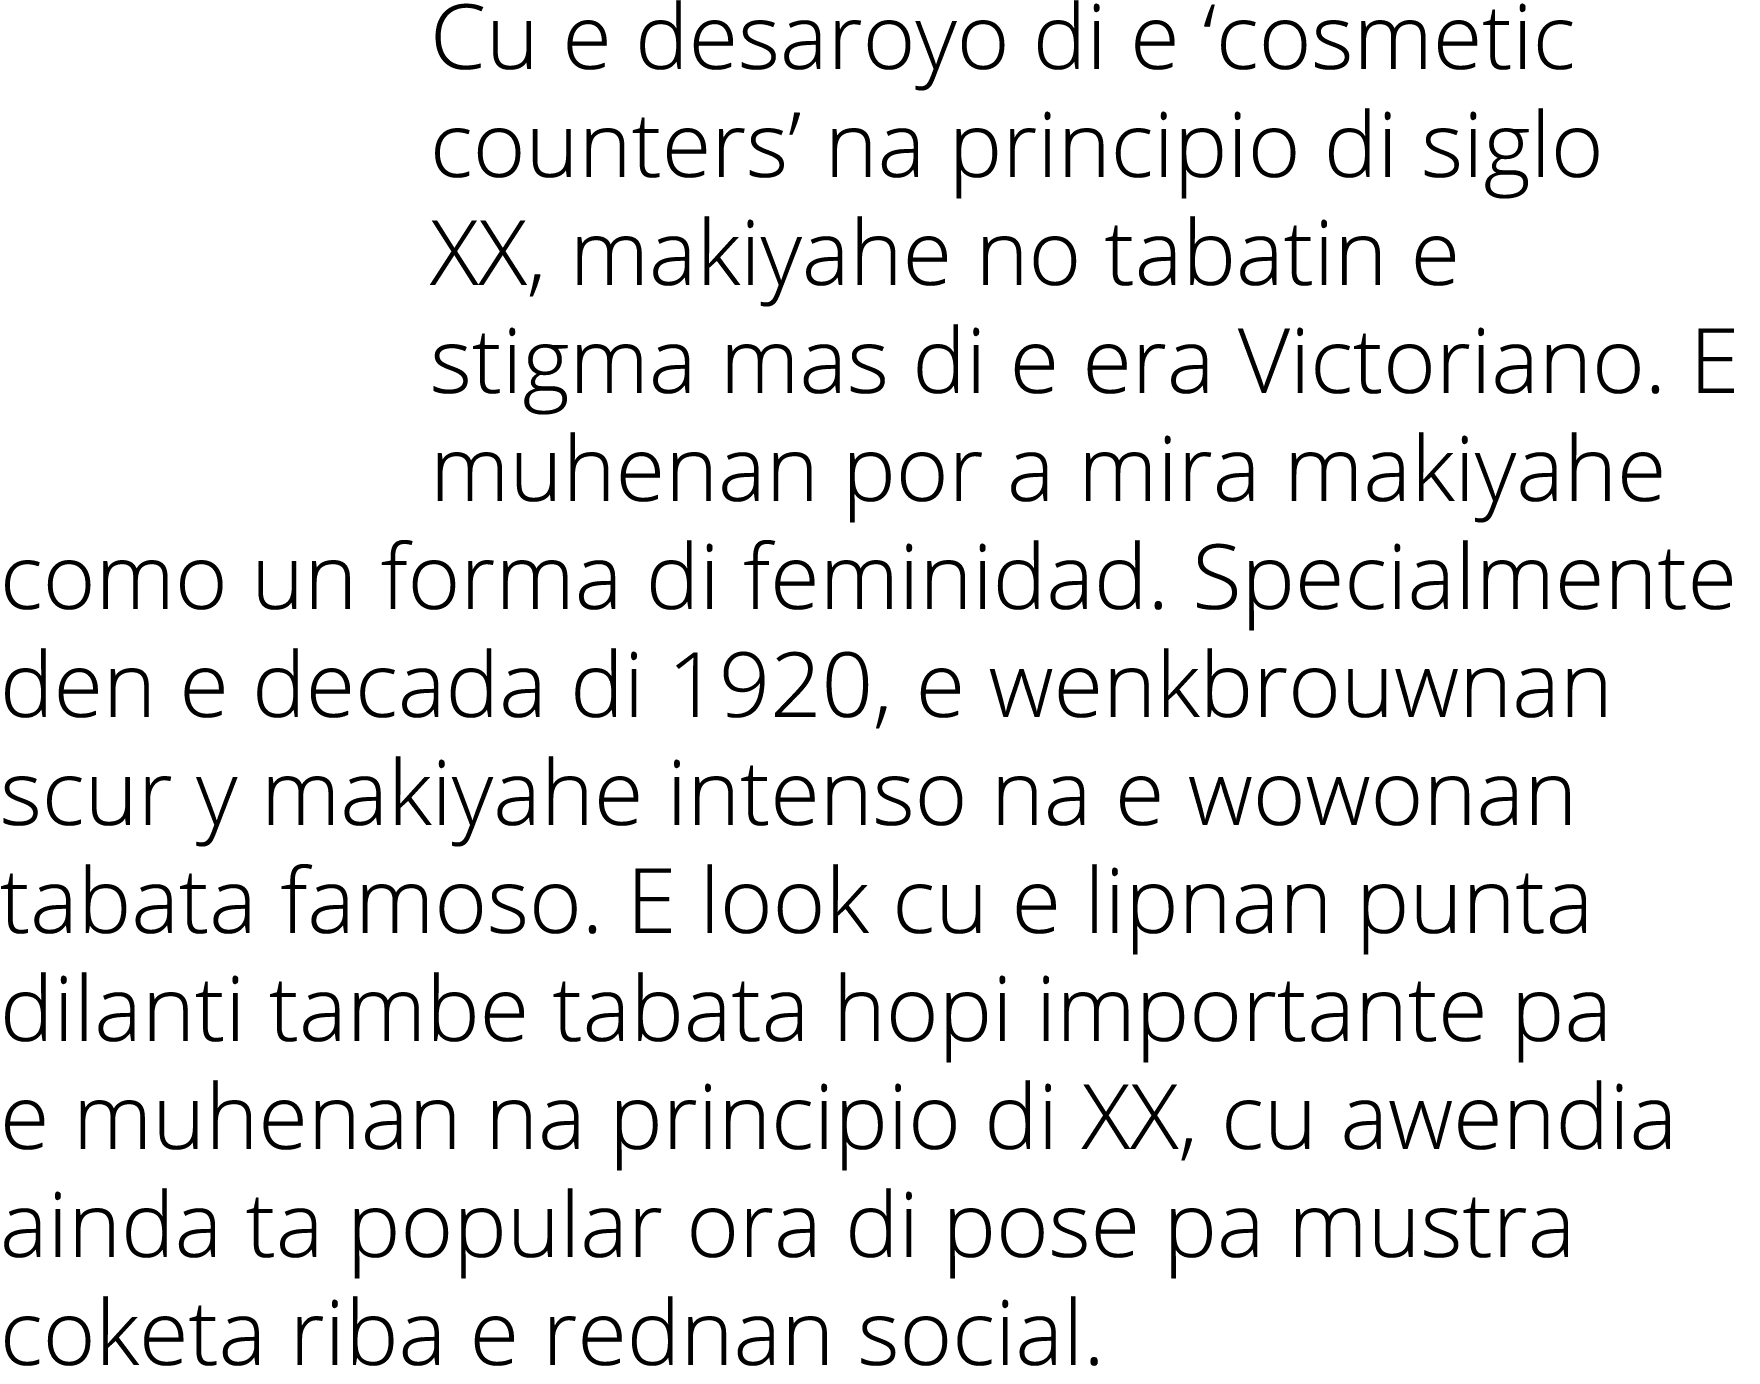 Cu e desaroyo di e  cosmetic counters  na principio di siglo XX, makiyahe no tabatin e stigma mas di e era Victoriano   